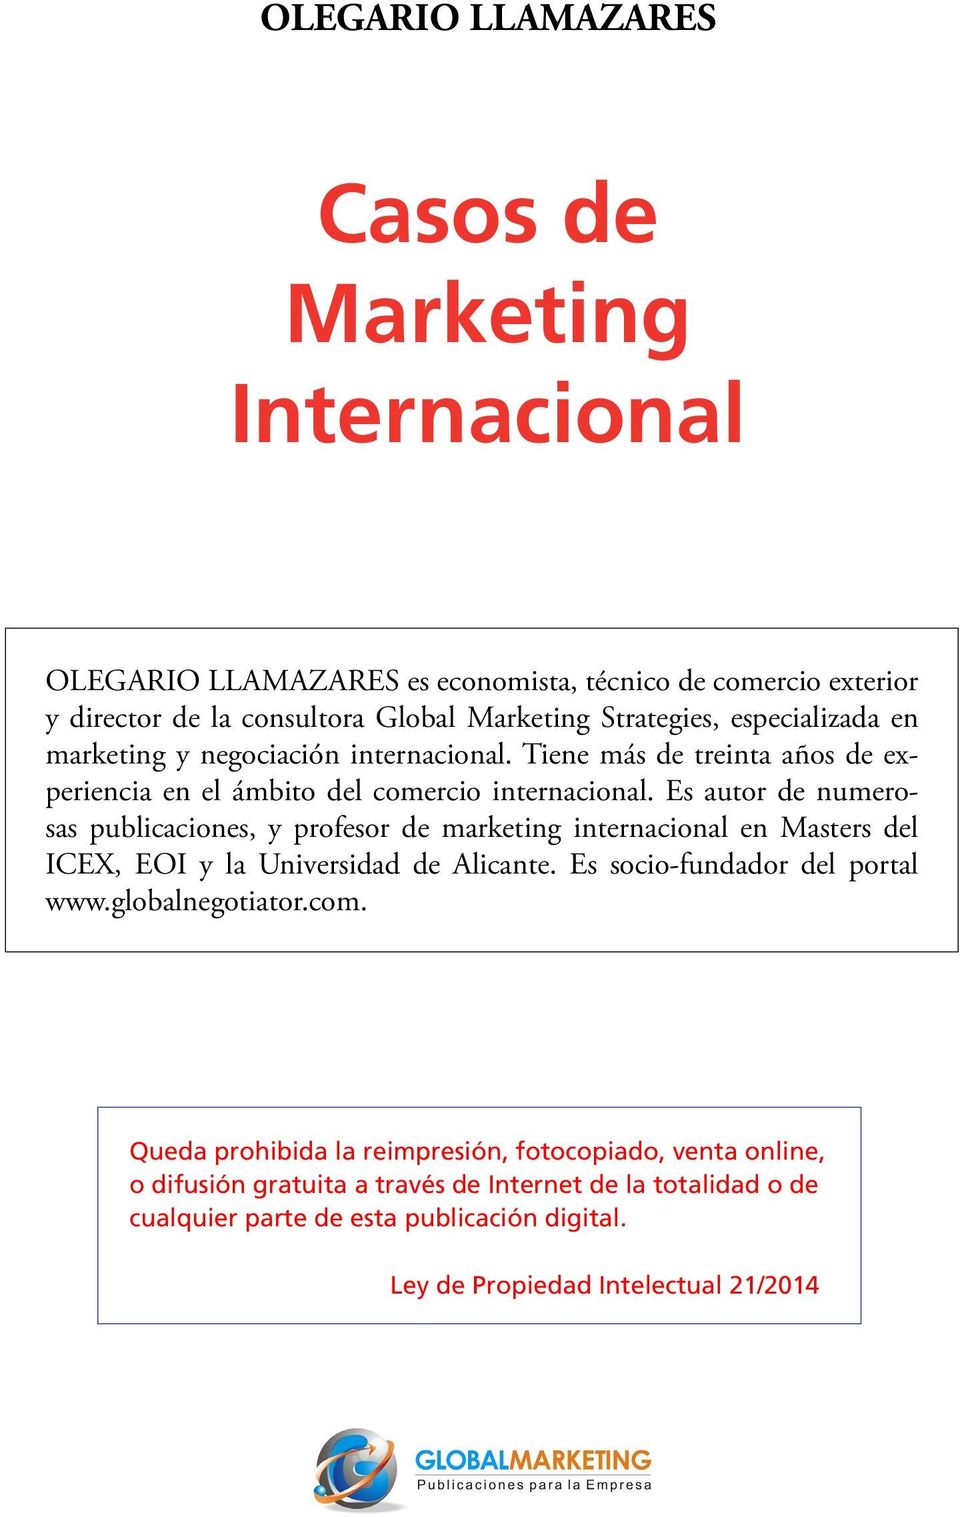 Es autor de numerosas publicaciones, y profesor de marketing internacional en Masters del ICEX, EOI y la Universidad de Alicante. Es socio-fundador del portal www.